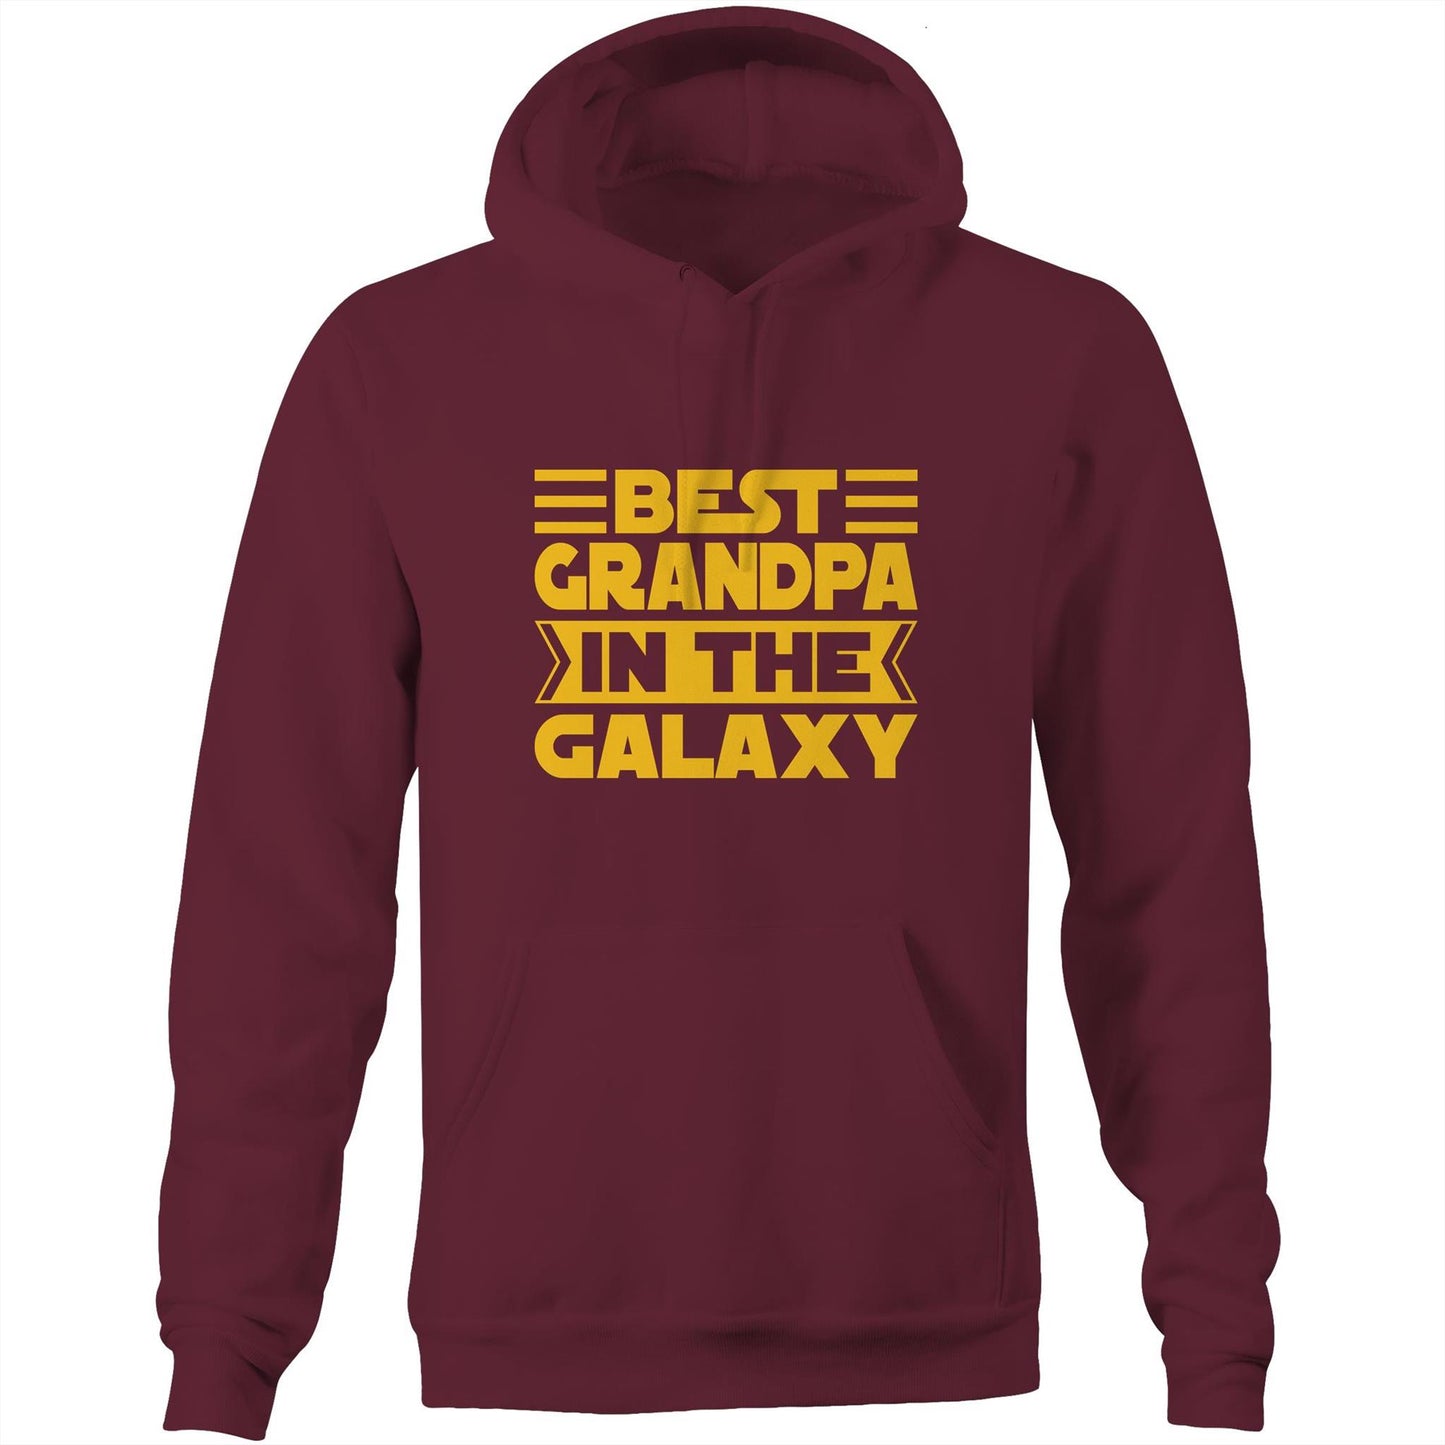 Best Grandpa In The Galaxy - Pocket Hoodie Sweatshirt Burgundy Hoodie Dad